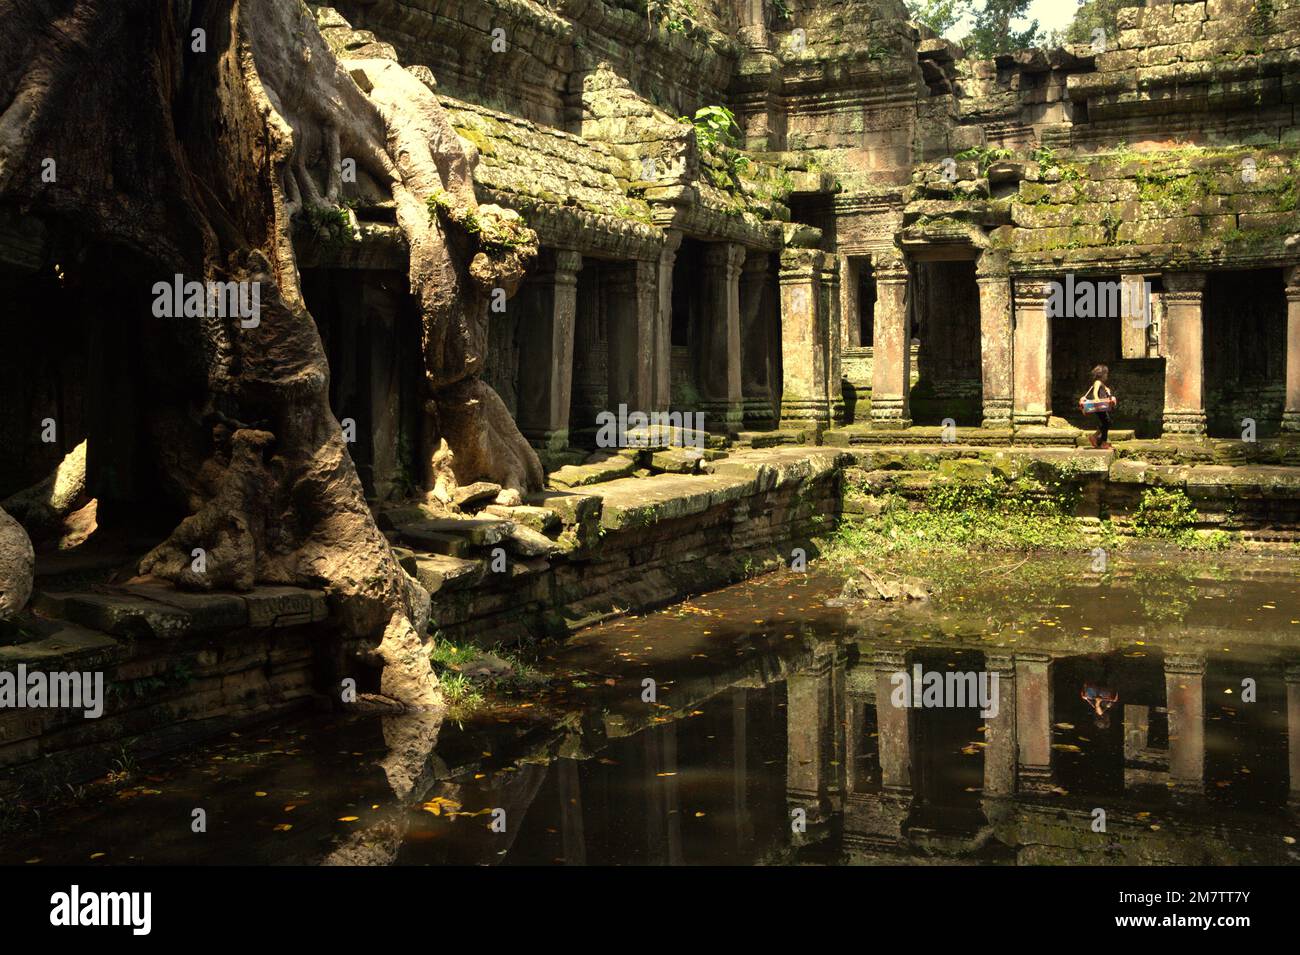 Eine Frau, die auf einem Fußweg zwischen einem uralten künstlichen Teich und den Ruinen des Preah Khan Tempels in Siem Reap, Kambodscha, spaziert. Teiche, Kanäle und Stauseen im Archäologischen Park von Angkor wurden gebaut, um eine alte Zivilisation des Khmer-Reiches zu unterstützen. Die größte und bevölkerungsreichste Stadt der Welt, in der bis zu 900.000 Menschen lebten, bis Kriege und Klimakatastrophen im 14. Und 15. Jahrhundert sie zur Aufgabe gezwungen hatten. Stockfoto